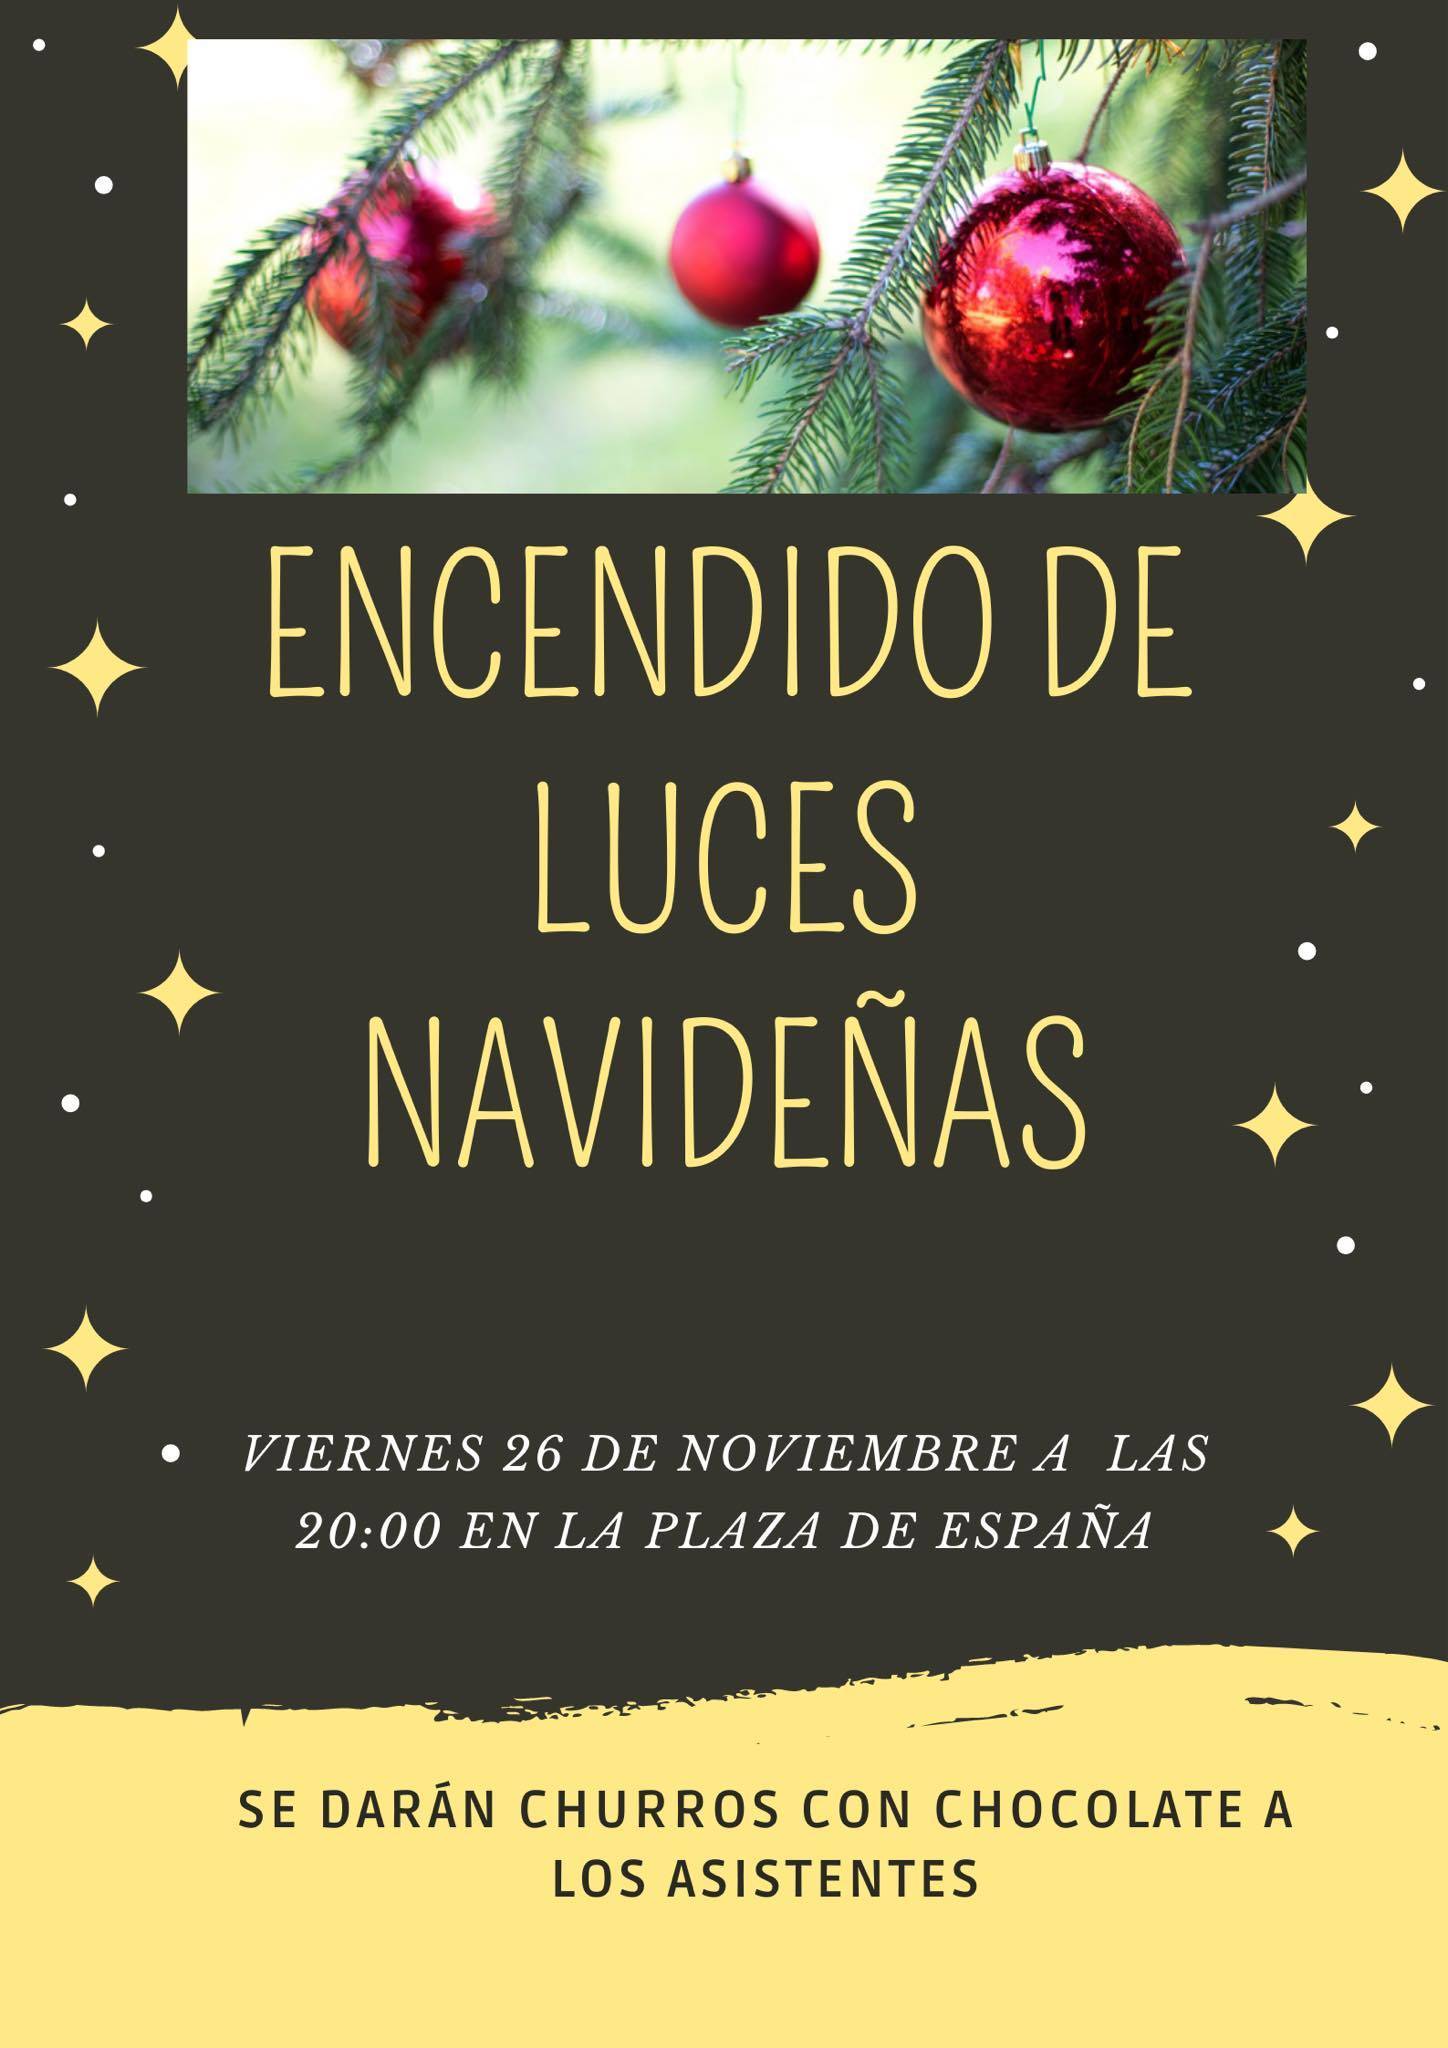 Encendido de luces navideñas (2021) - Deleitosa (Cáceres)